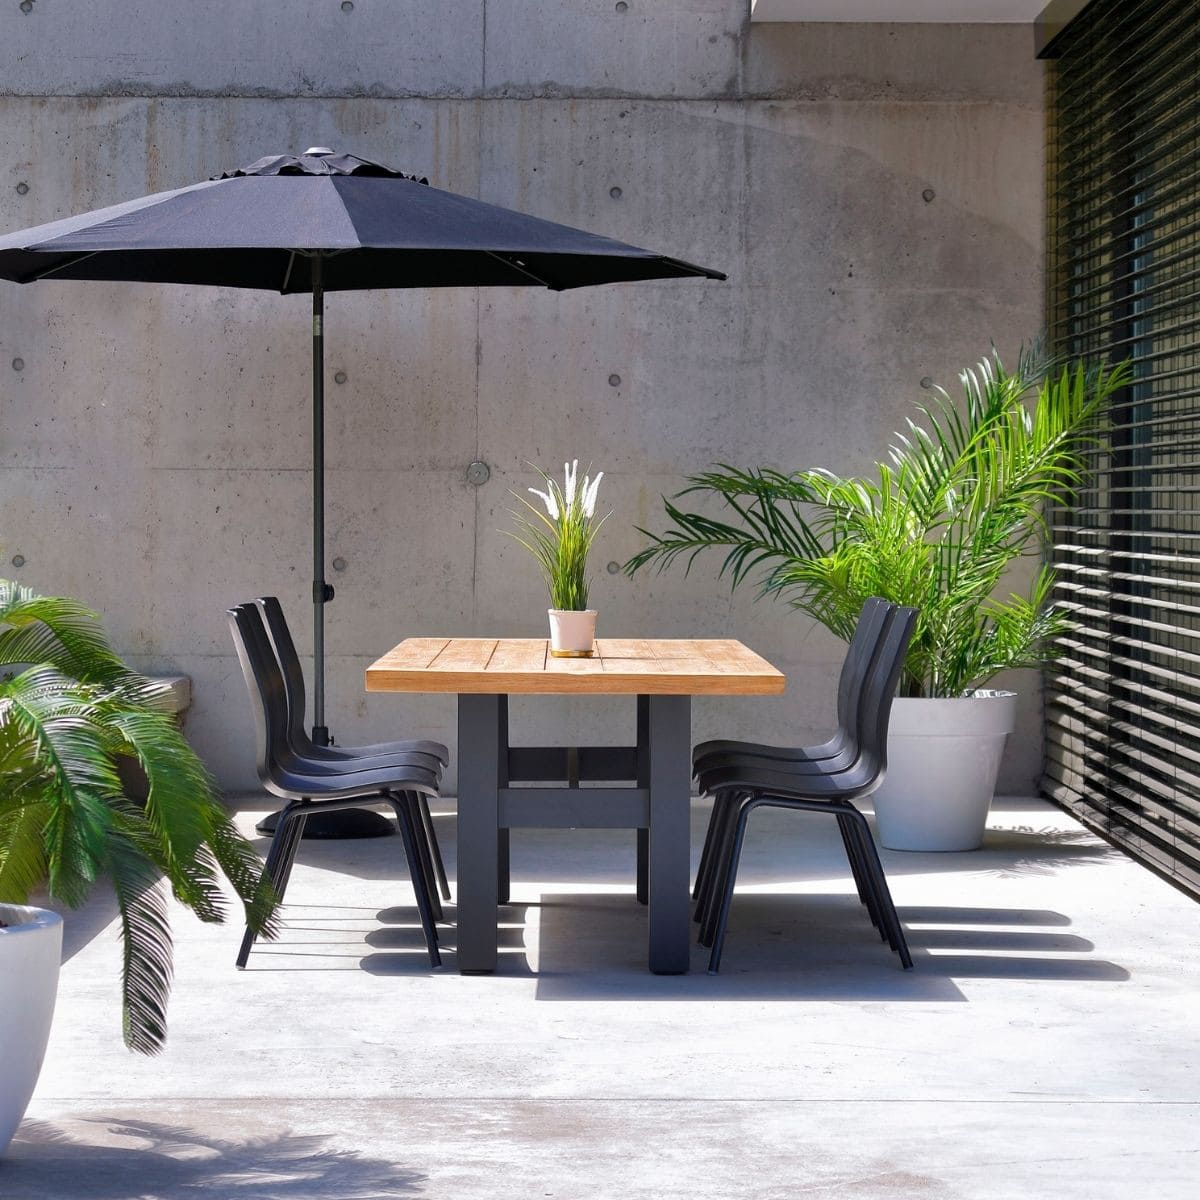 Table de jardin avec chaise noire